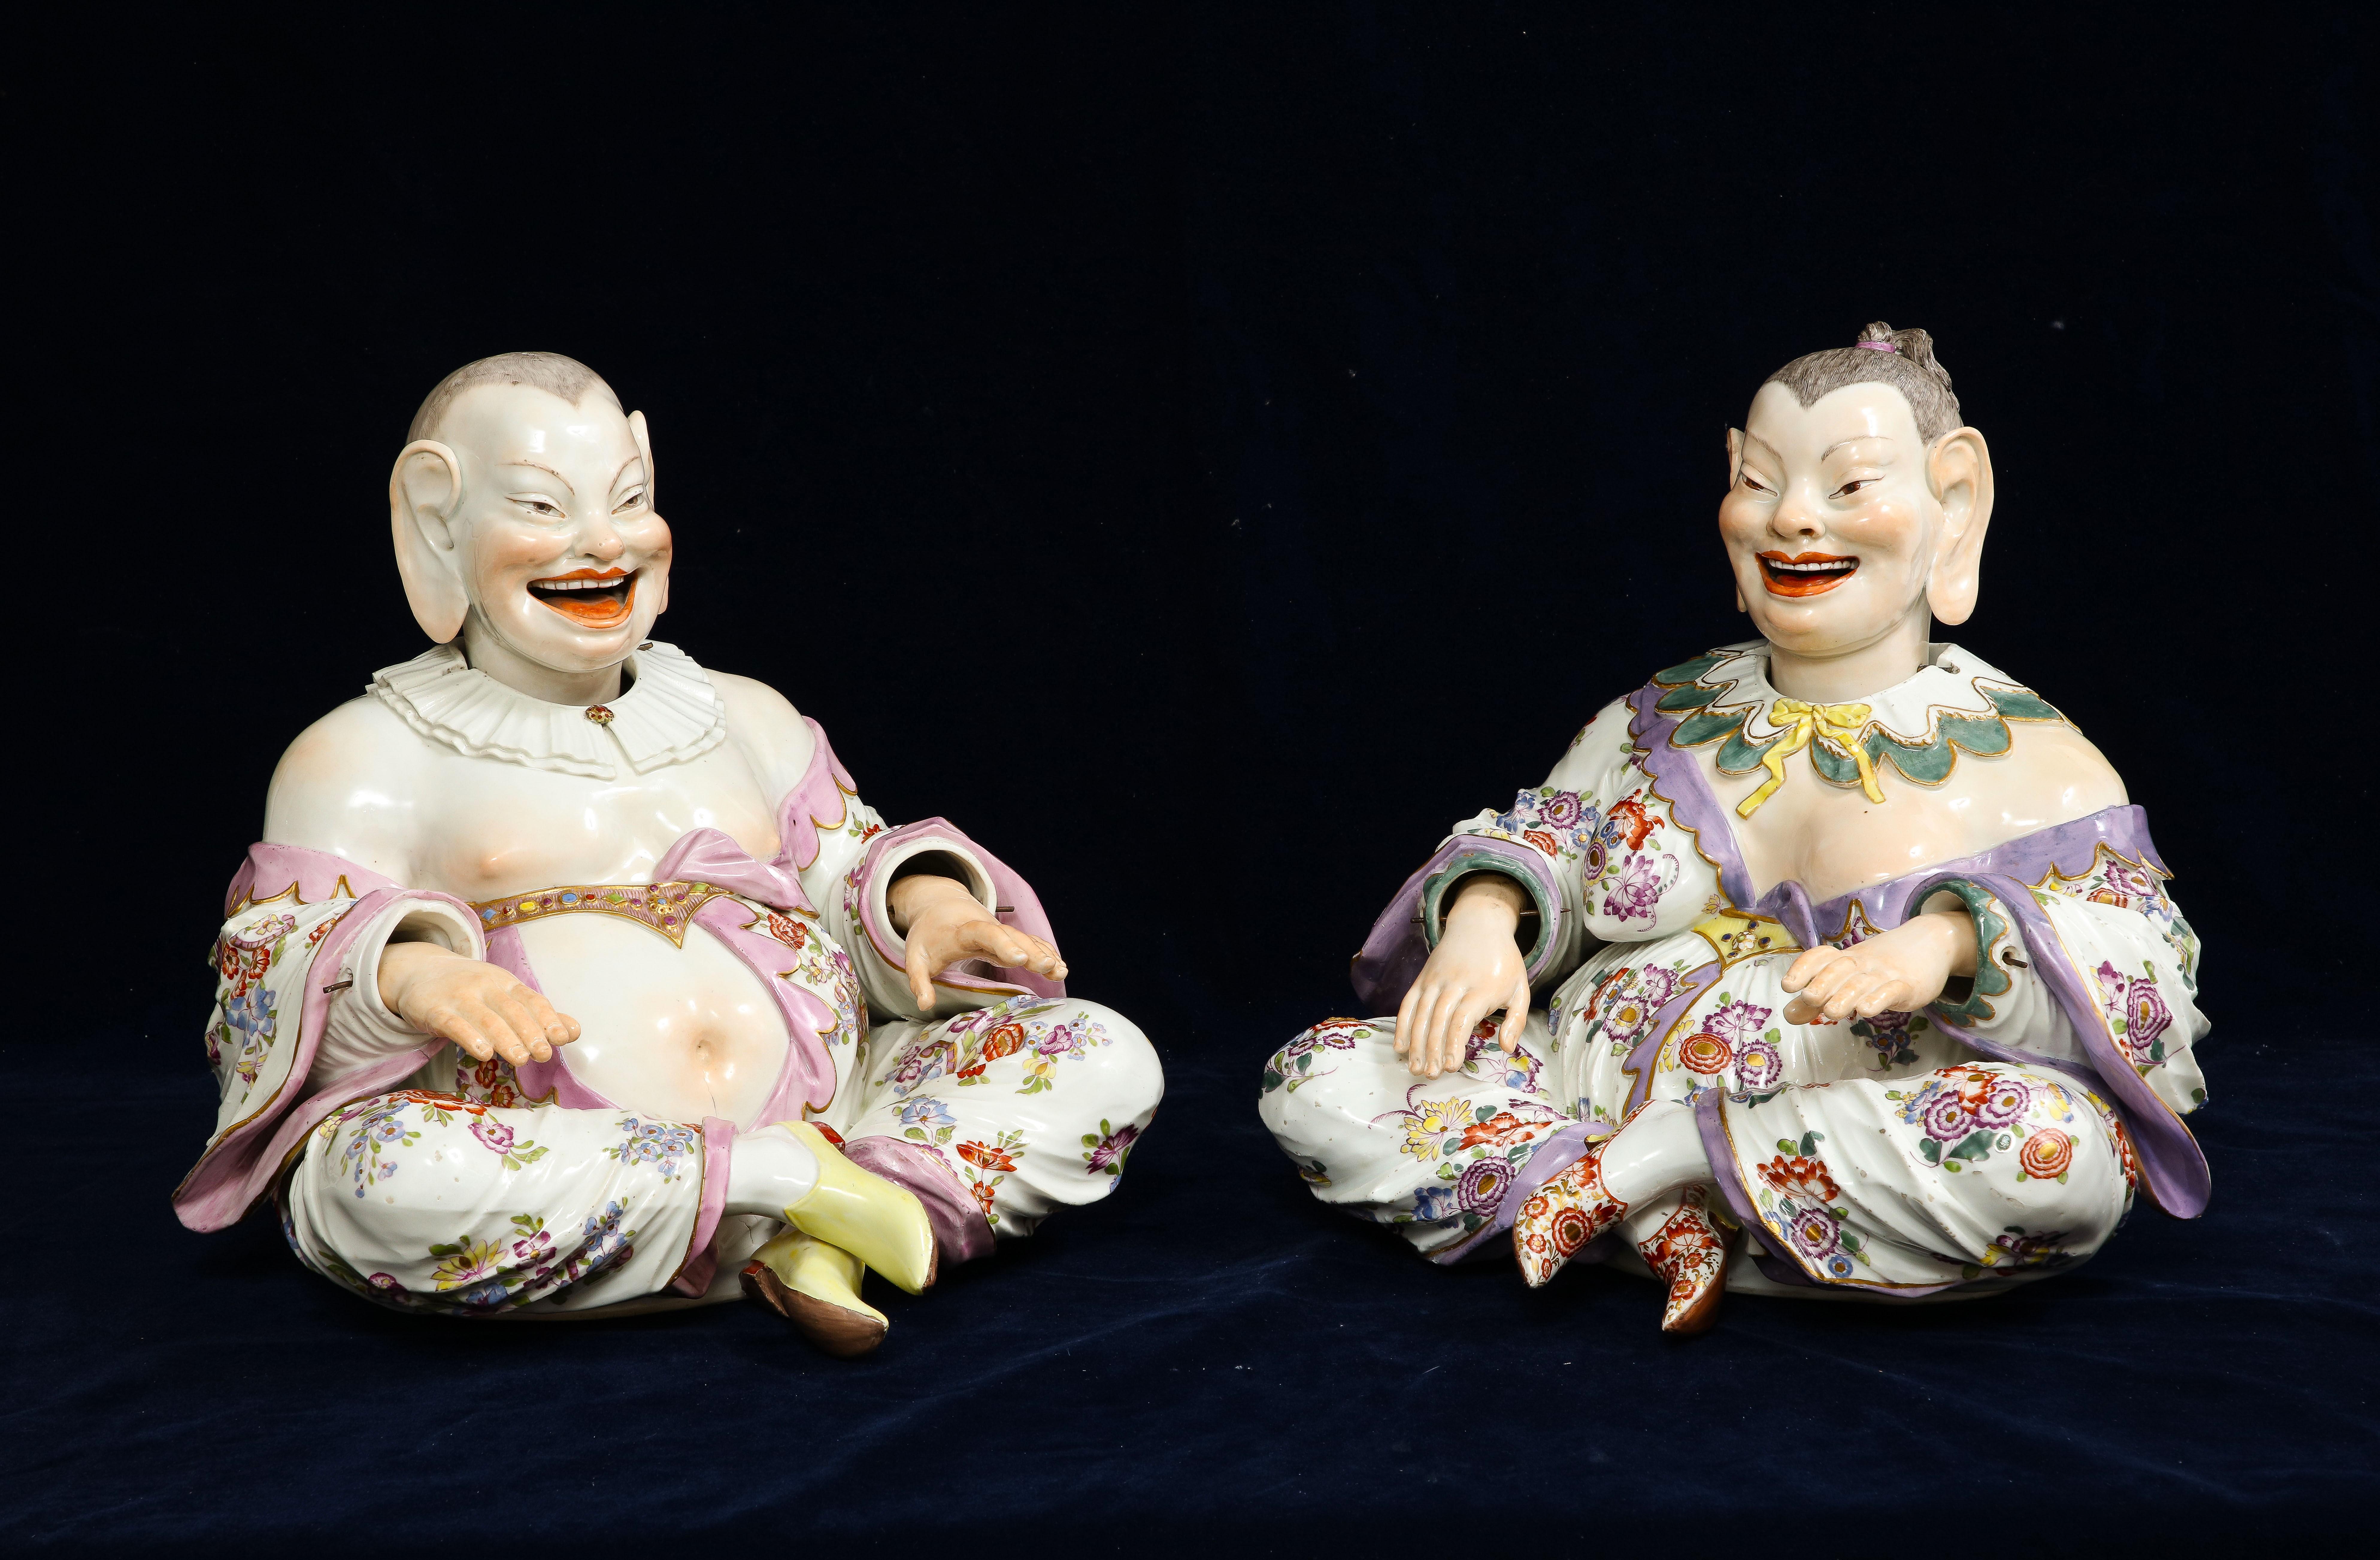 Ein großes, seltenes Paar nickender Pagodenfiguren im Meissener Chinoiserie-Stil des 19. Jahrhunderts mit beweglichem Kopf, Hand und Zunge, bekannt als 